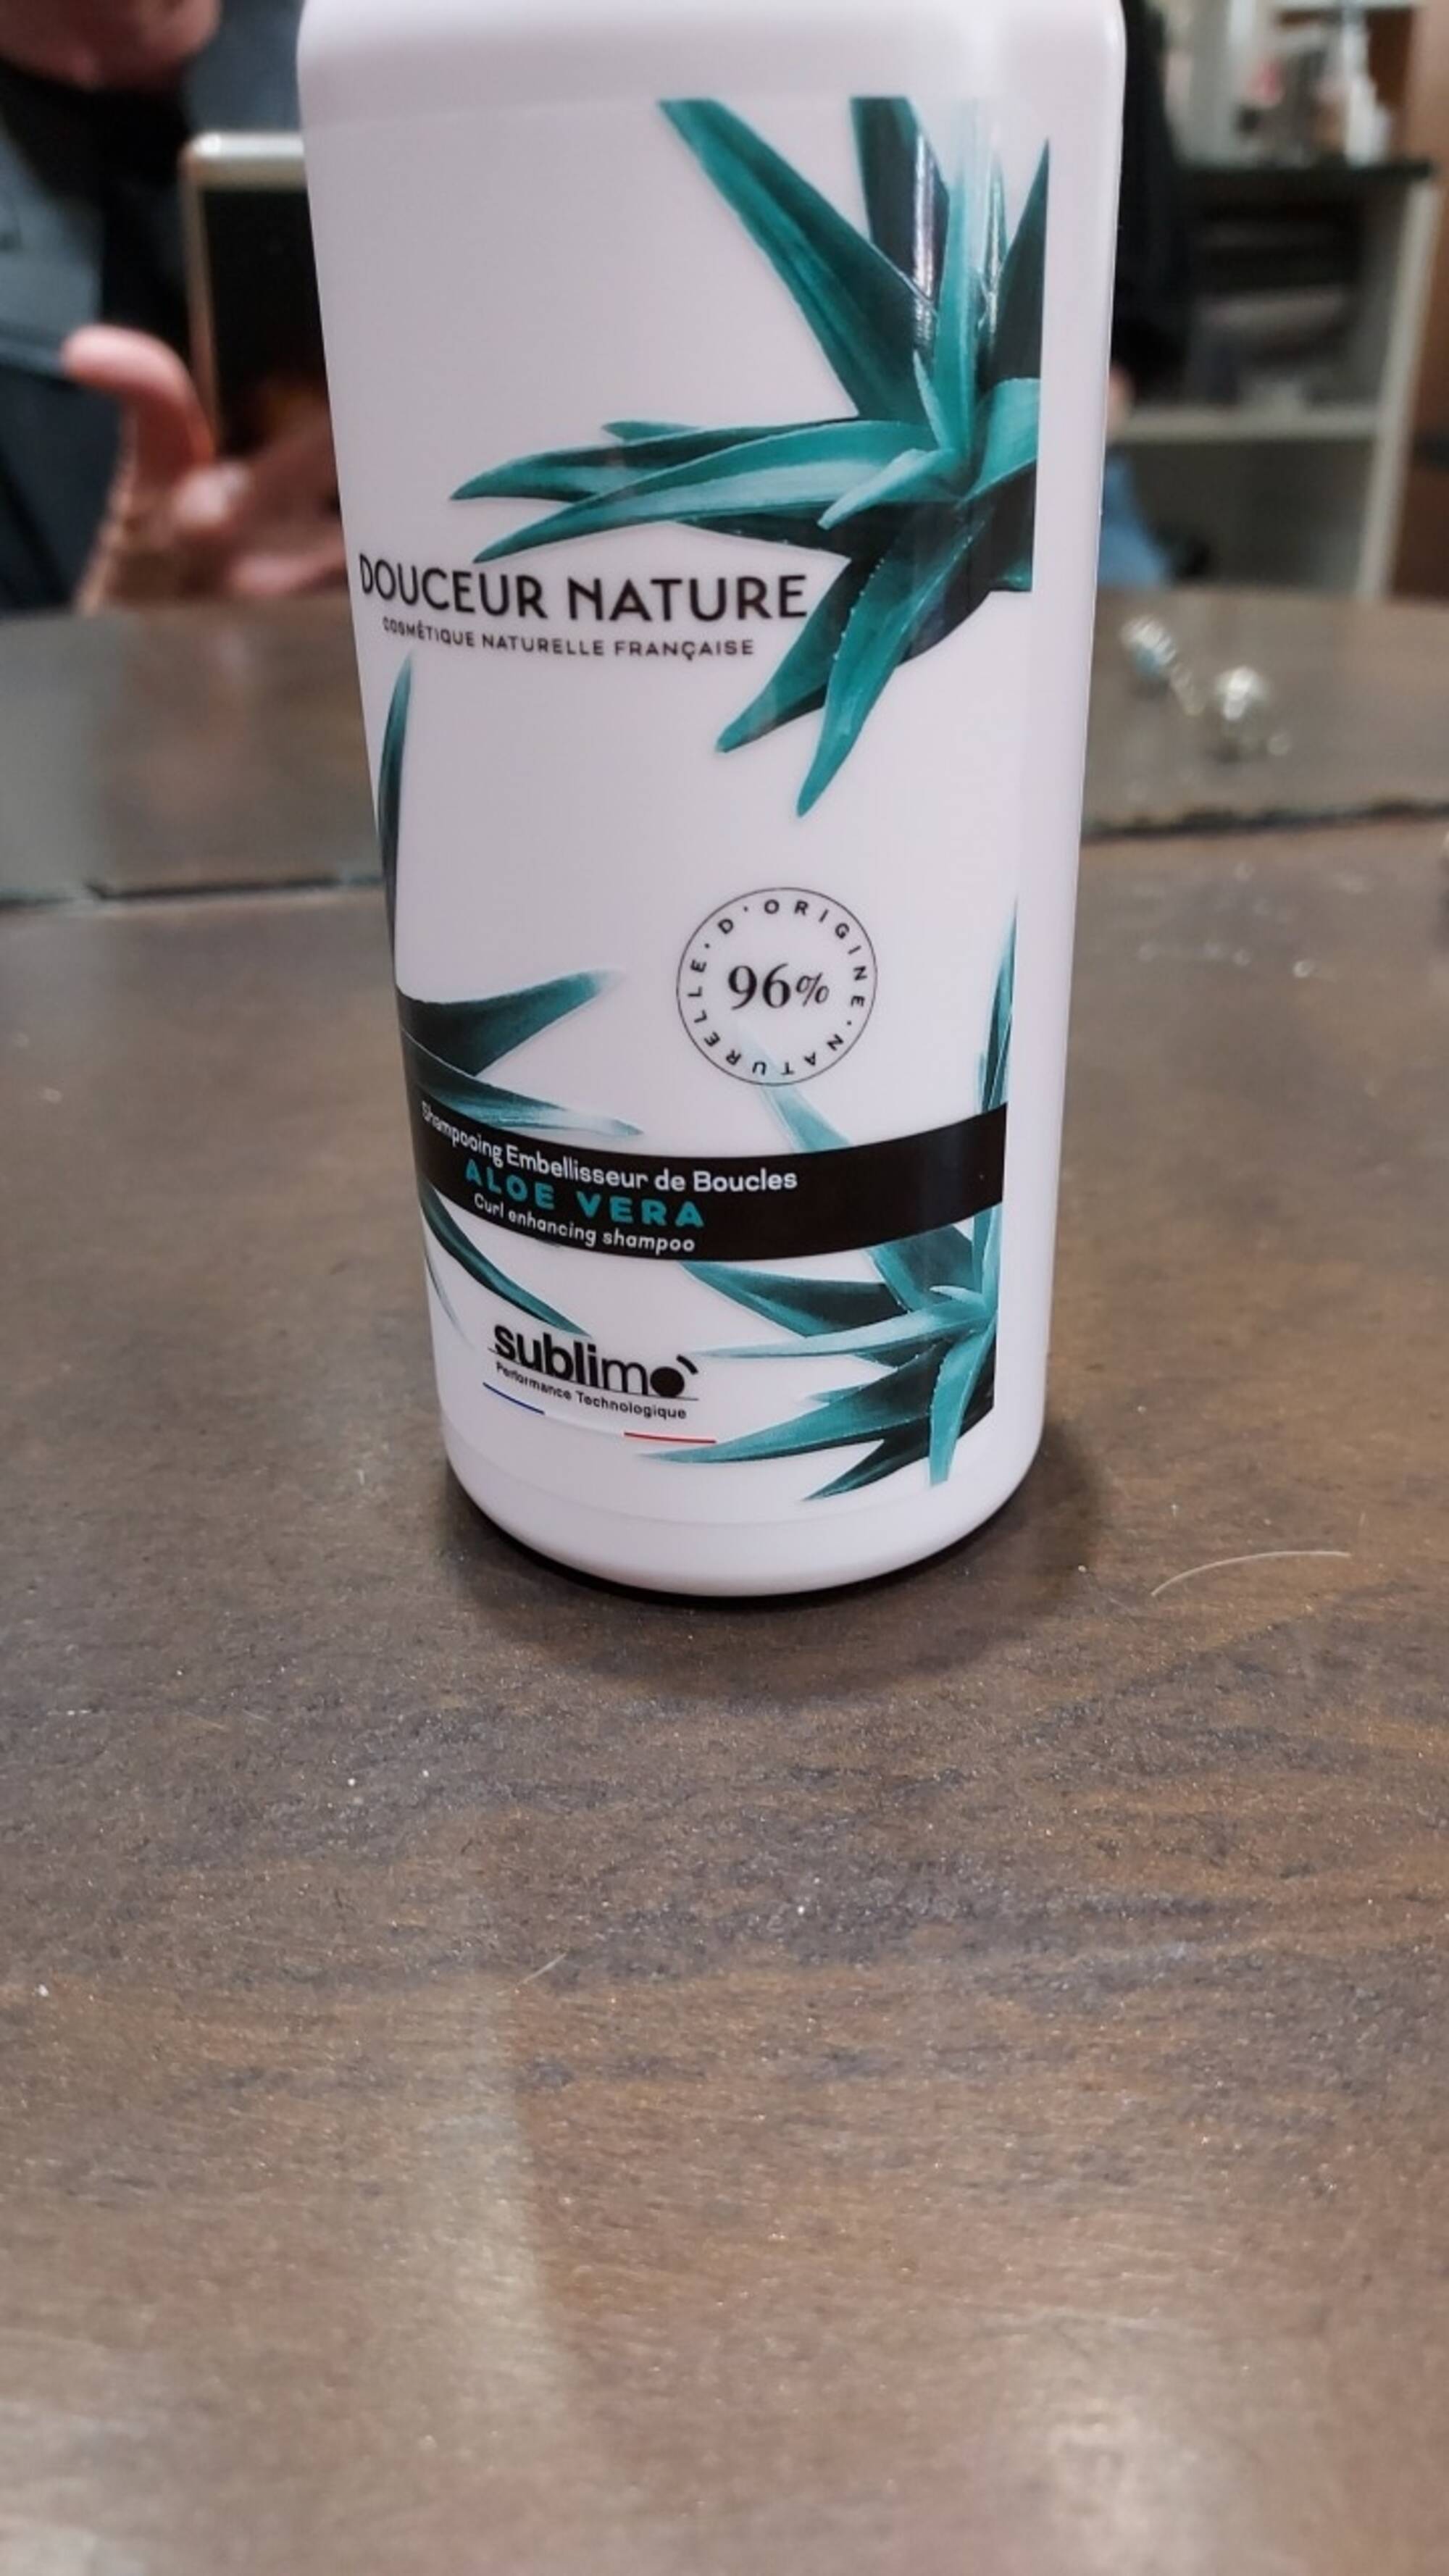 SUBLIMO - Douceur nature - Shampooing embellisseur de boucles aloe vera